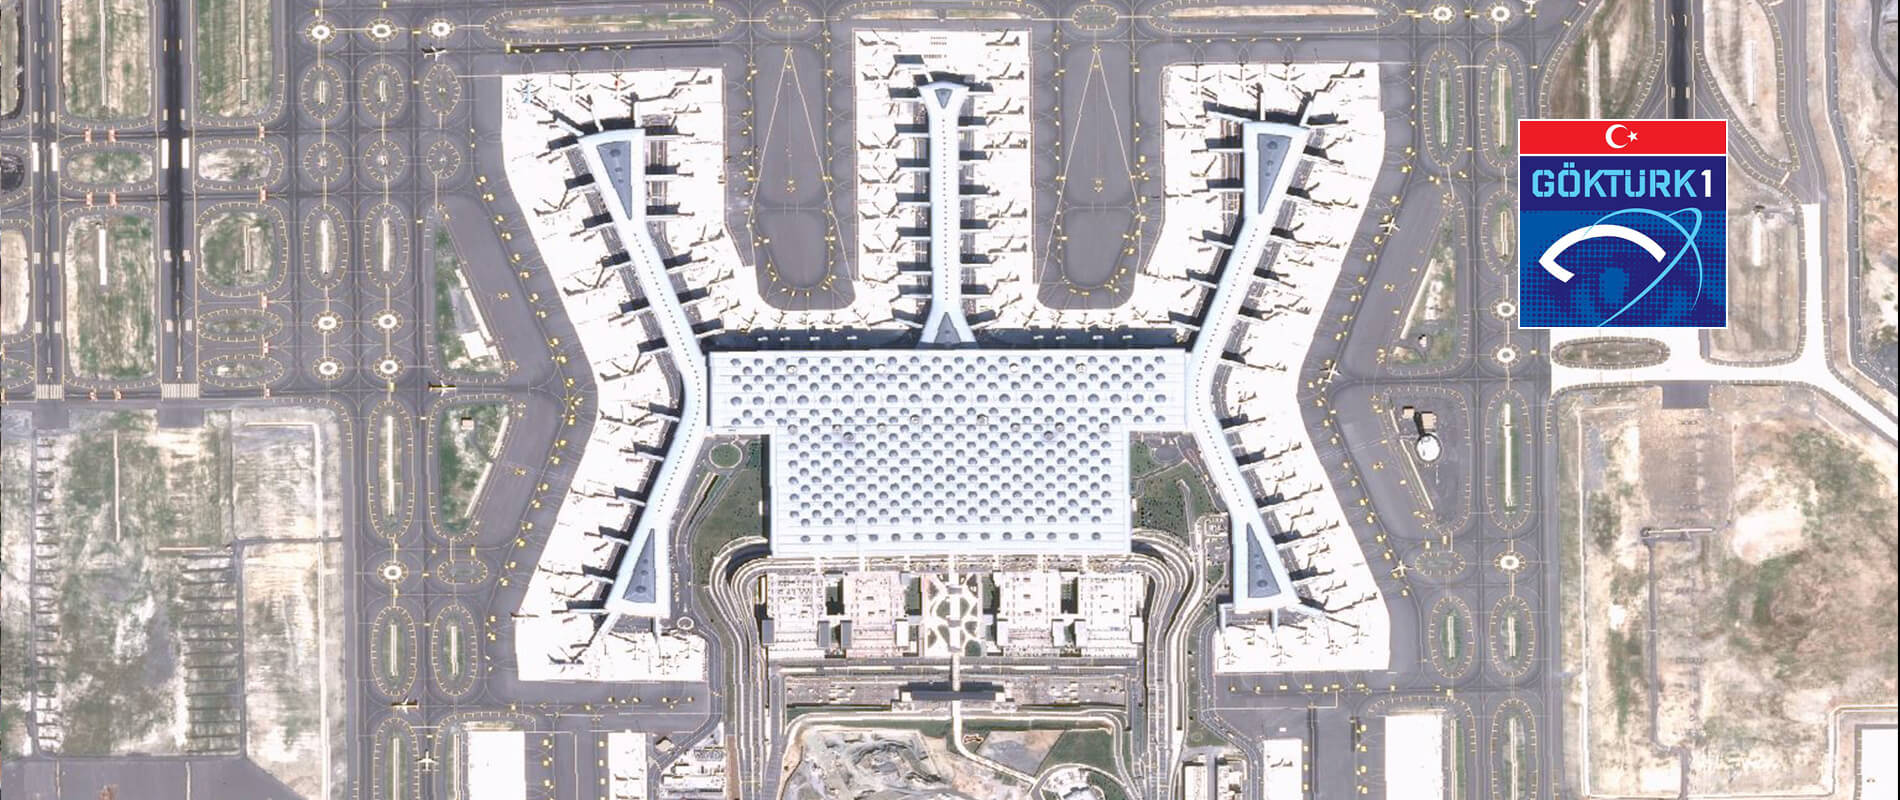 Göktürk-1 Uydusu - İstanbul Havalimanı